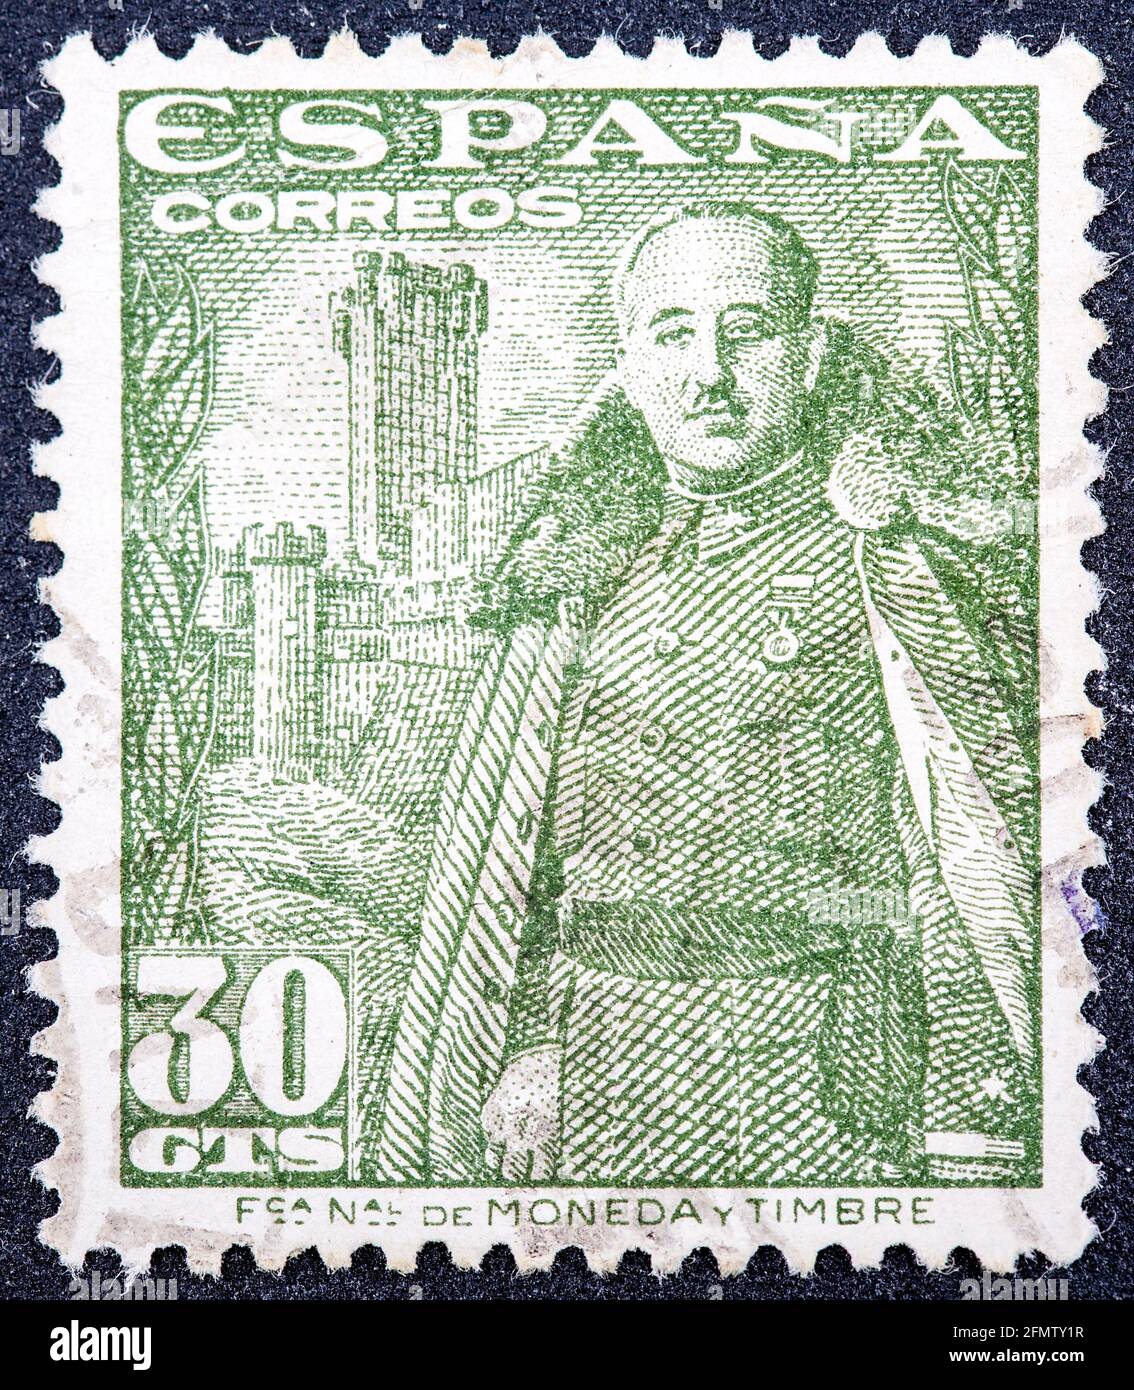 ESPAGNE - VERS 1948: Un timbre imprimé en Espagne montre le général Franco et Castillo de la Mota, vers 1948. Banque D'Images